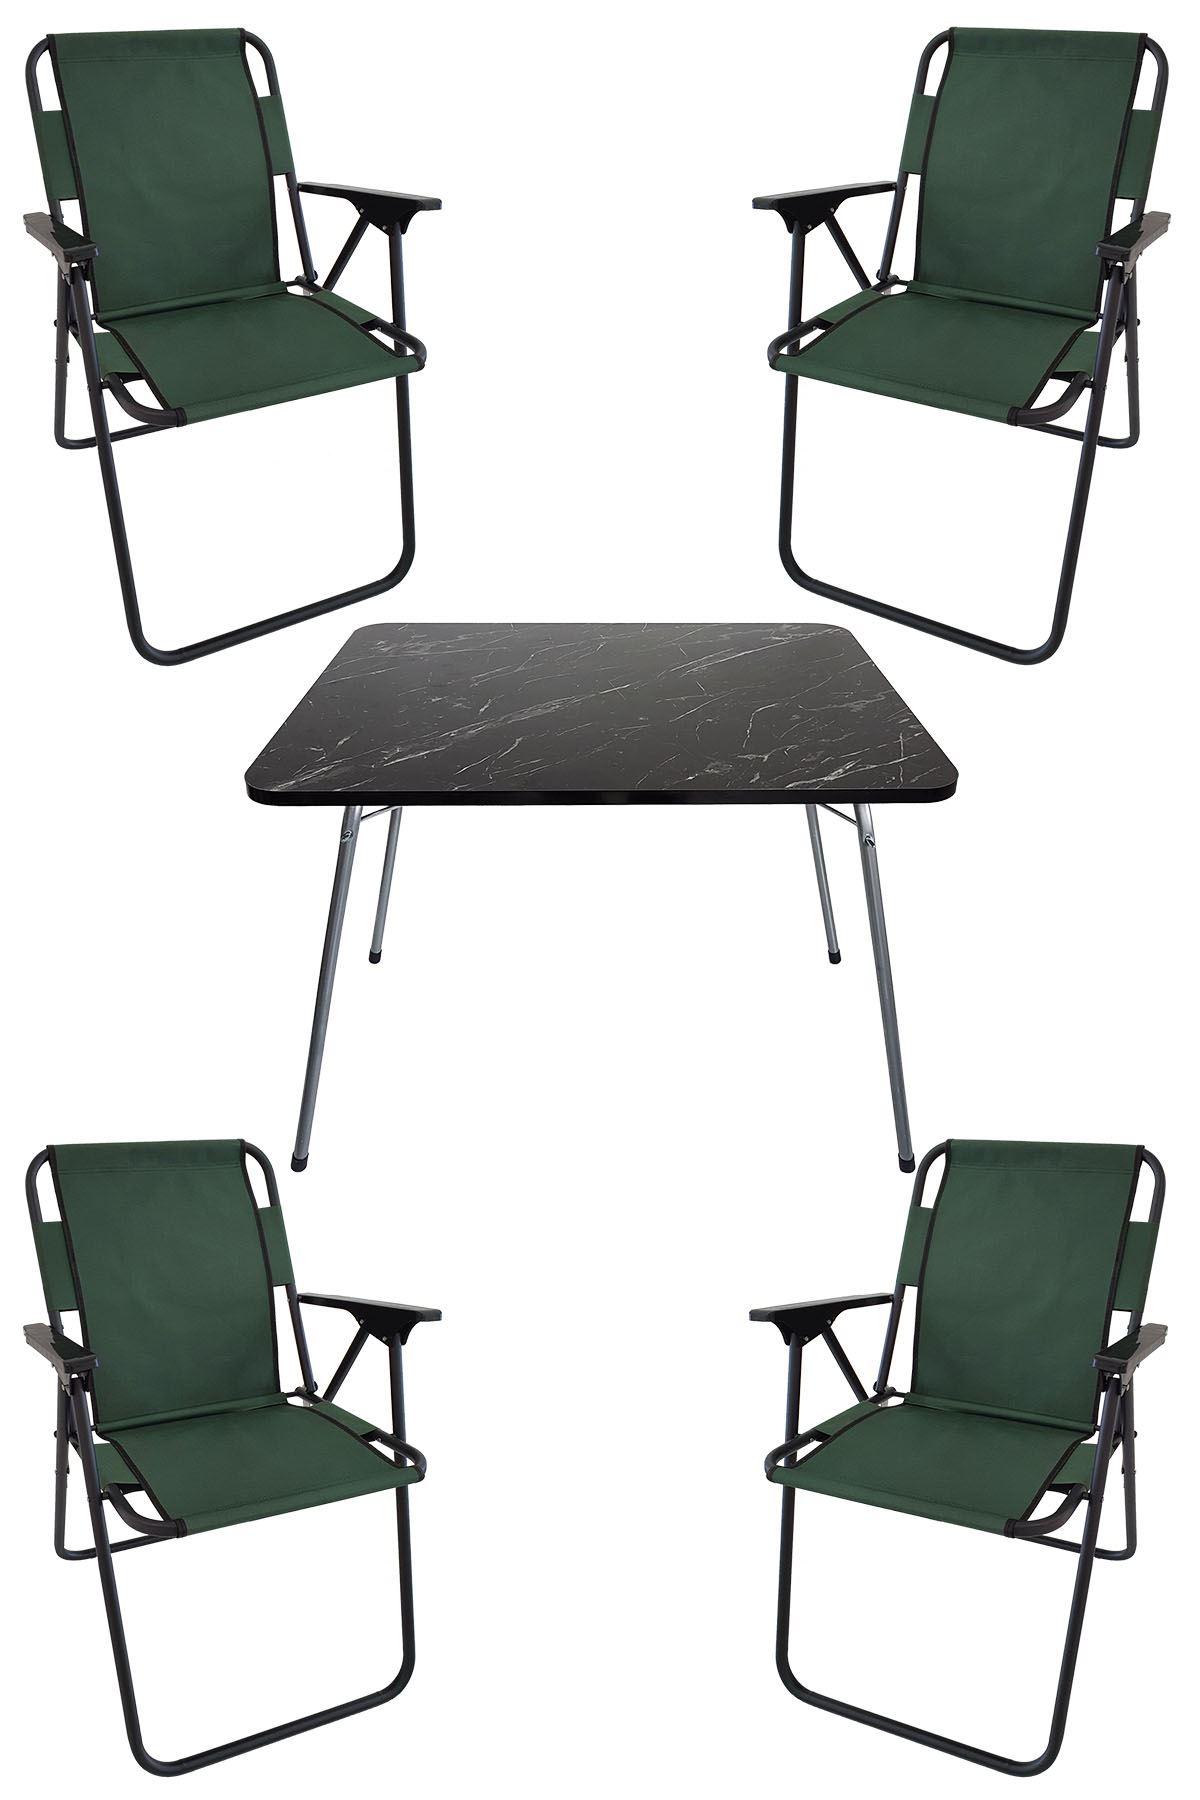 Bofigo 60X80 Granit Desenli Katlanır Masa + 4 Adet Katlanır Sandalye Kamp Seti Bahçe Takımı Yeşil